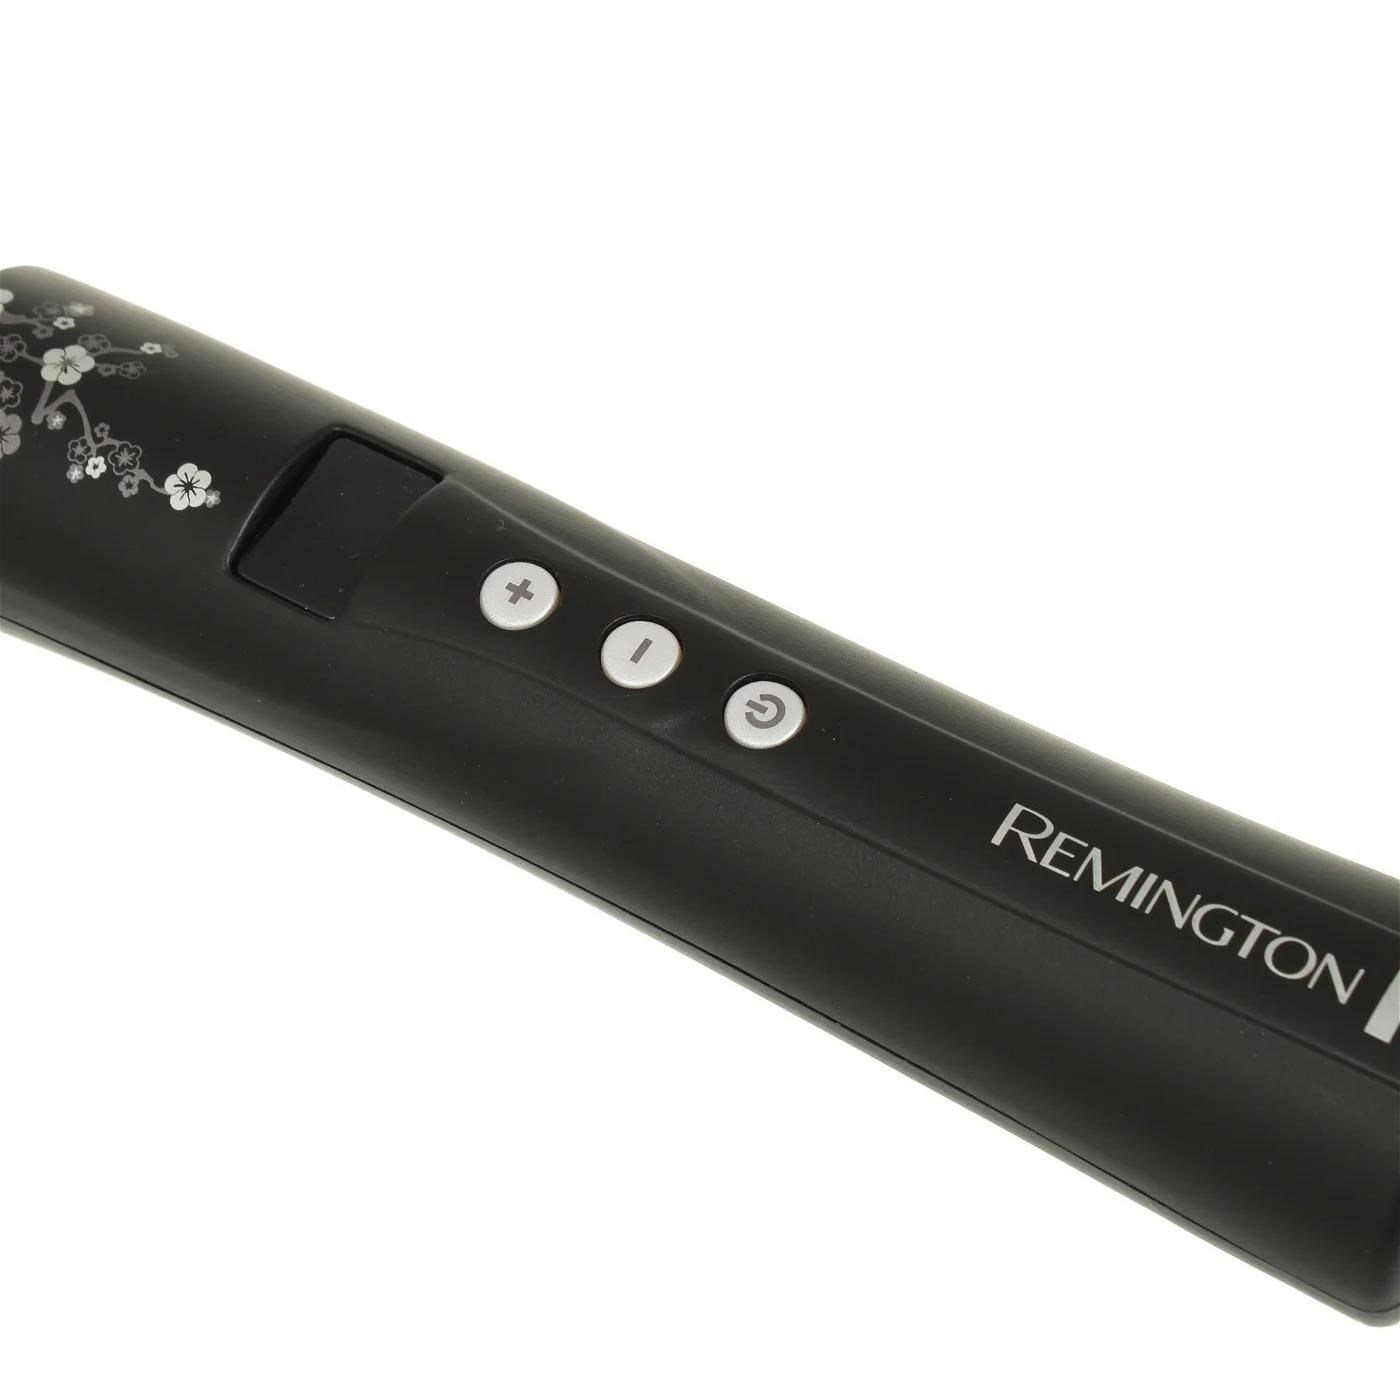 Remington Ci95 Pearl kulma na vlasy,  kónická,  automatické vypnutí,  studený hrot,  černá3 